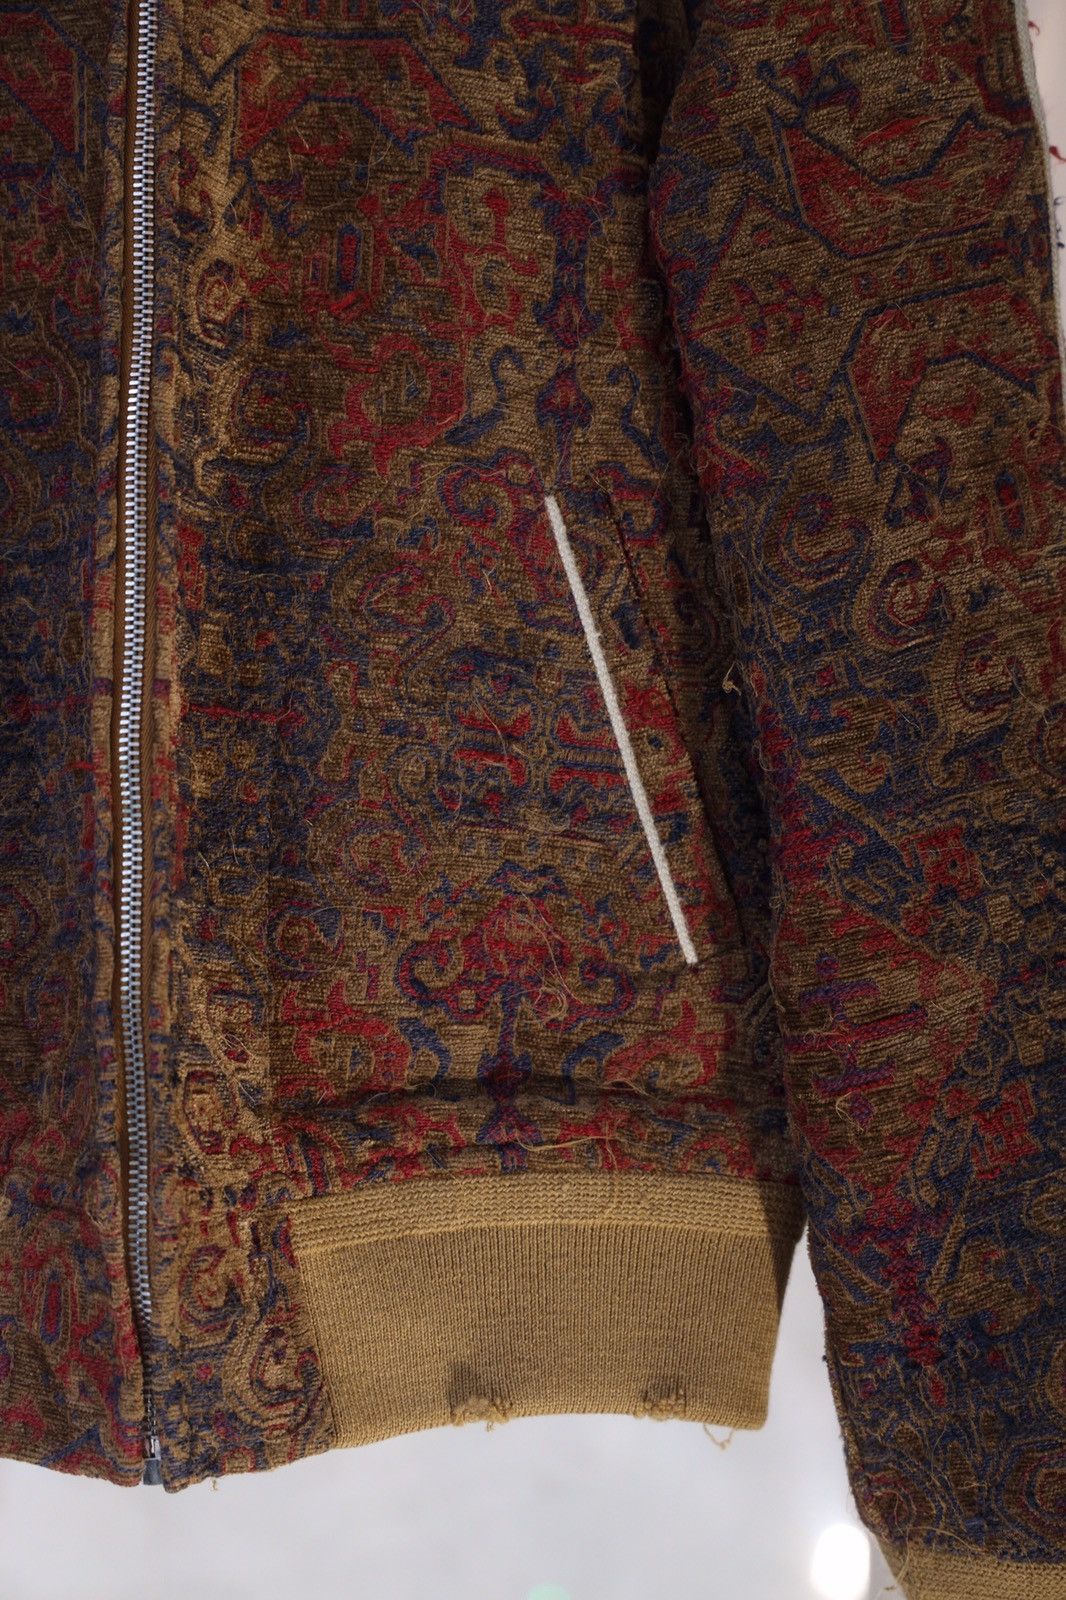 Saint Laurent Paris Saint Laurent Teddy Marrakech Tapestry Bomber Jacket Size US S / EU 44-46 / 1 - 9 Thumbnail